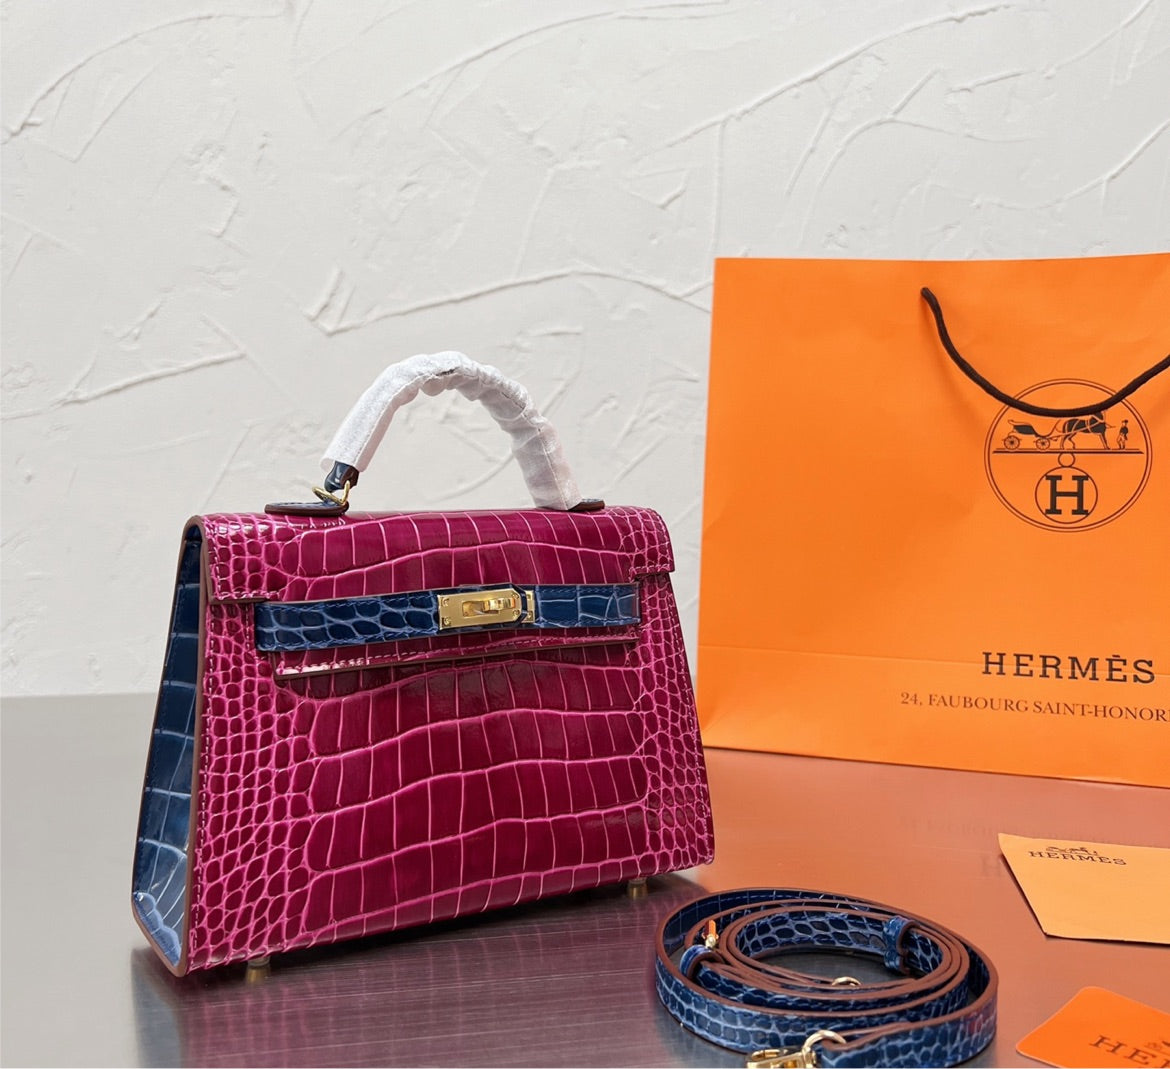 New Hermes woman handbag